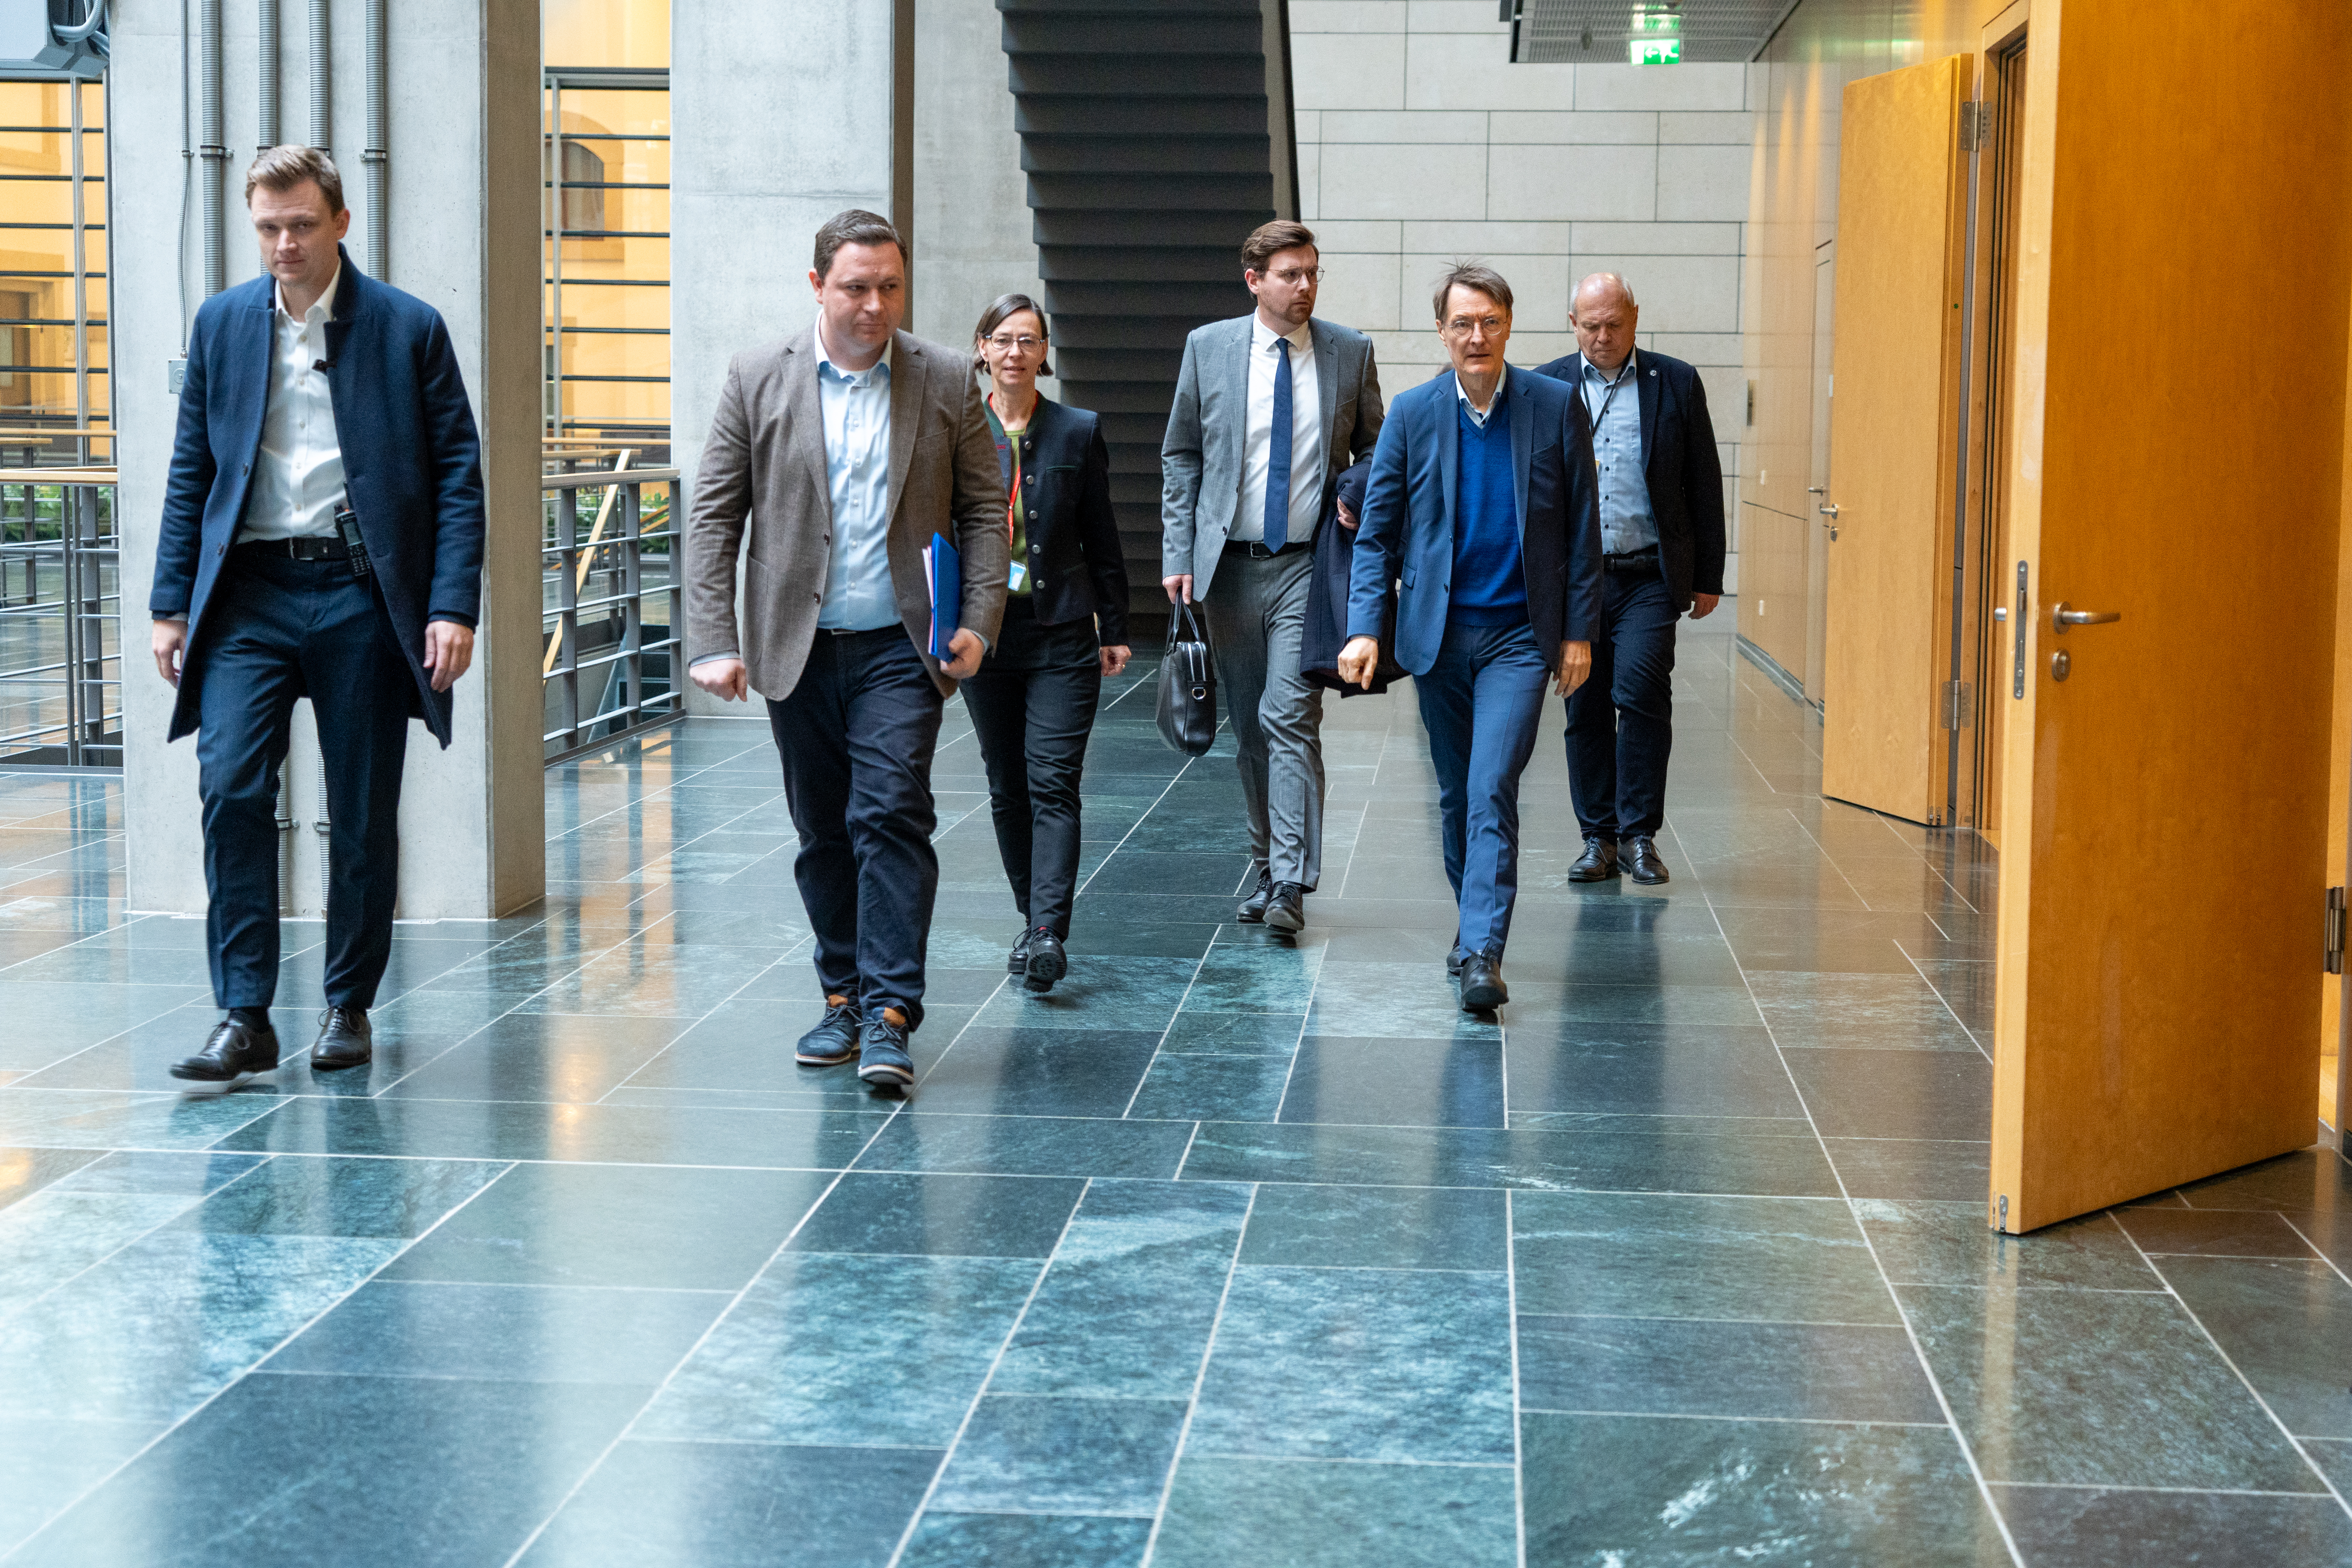 Prof. Dr. Karl Lauterbach ist in einem Gang des Bundestages unterwegs zu dem Raum mit den Teilnehmenden.